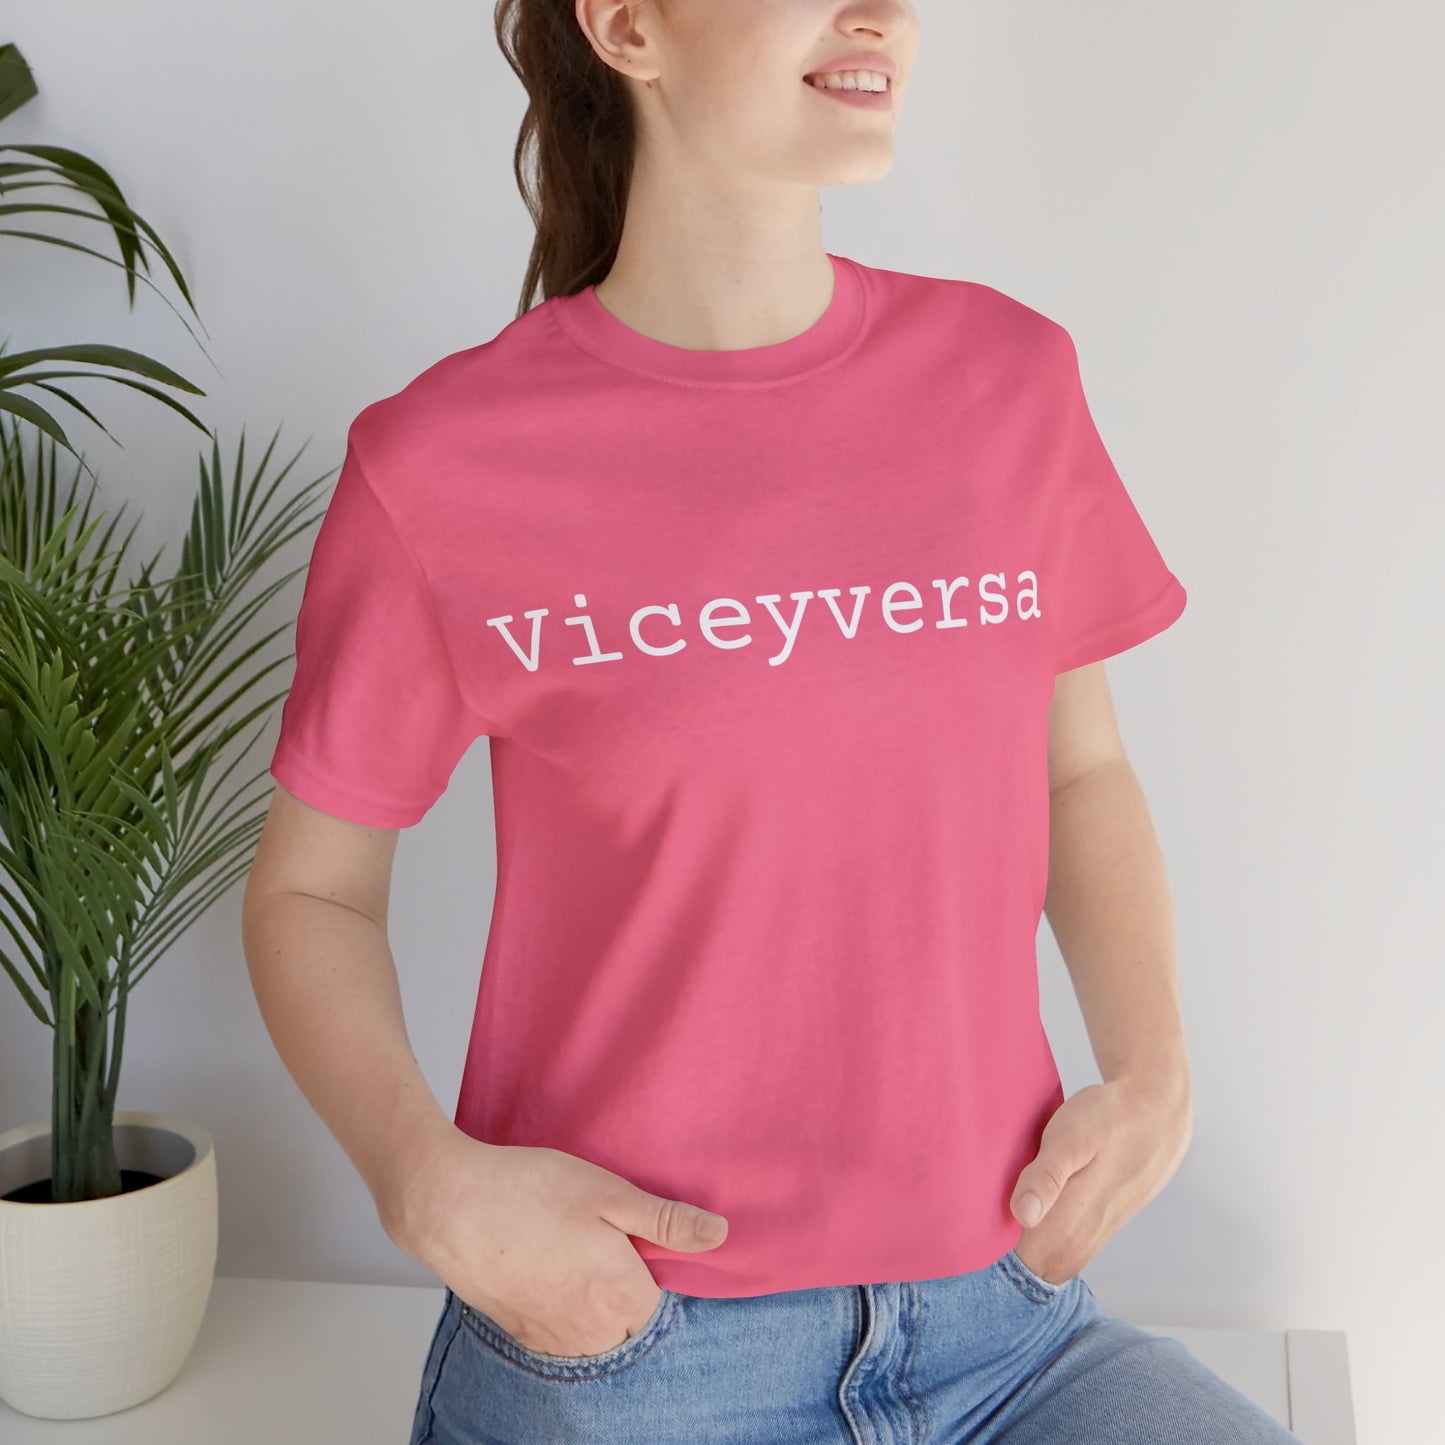 Viceyversa - Hurts Shirts Collection